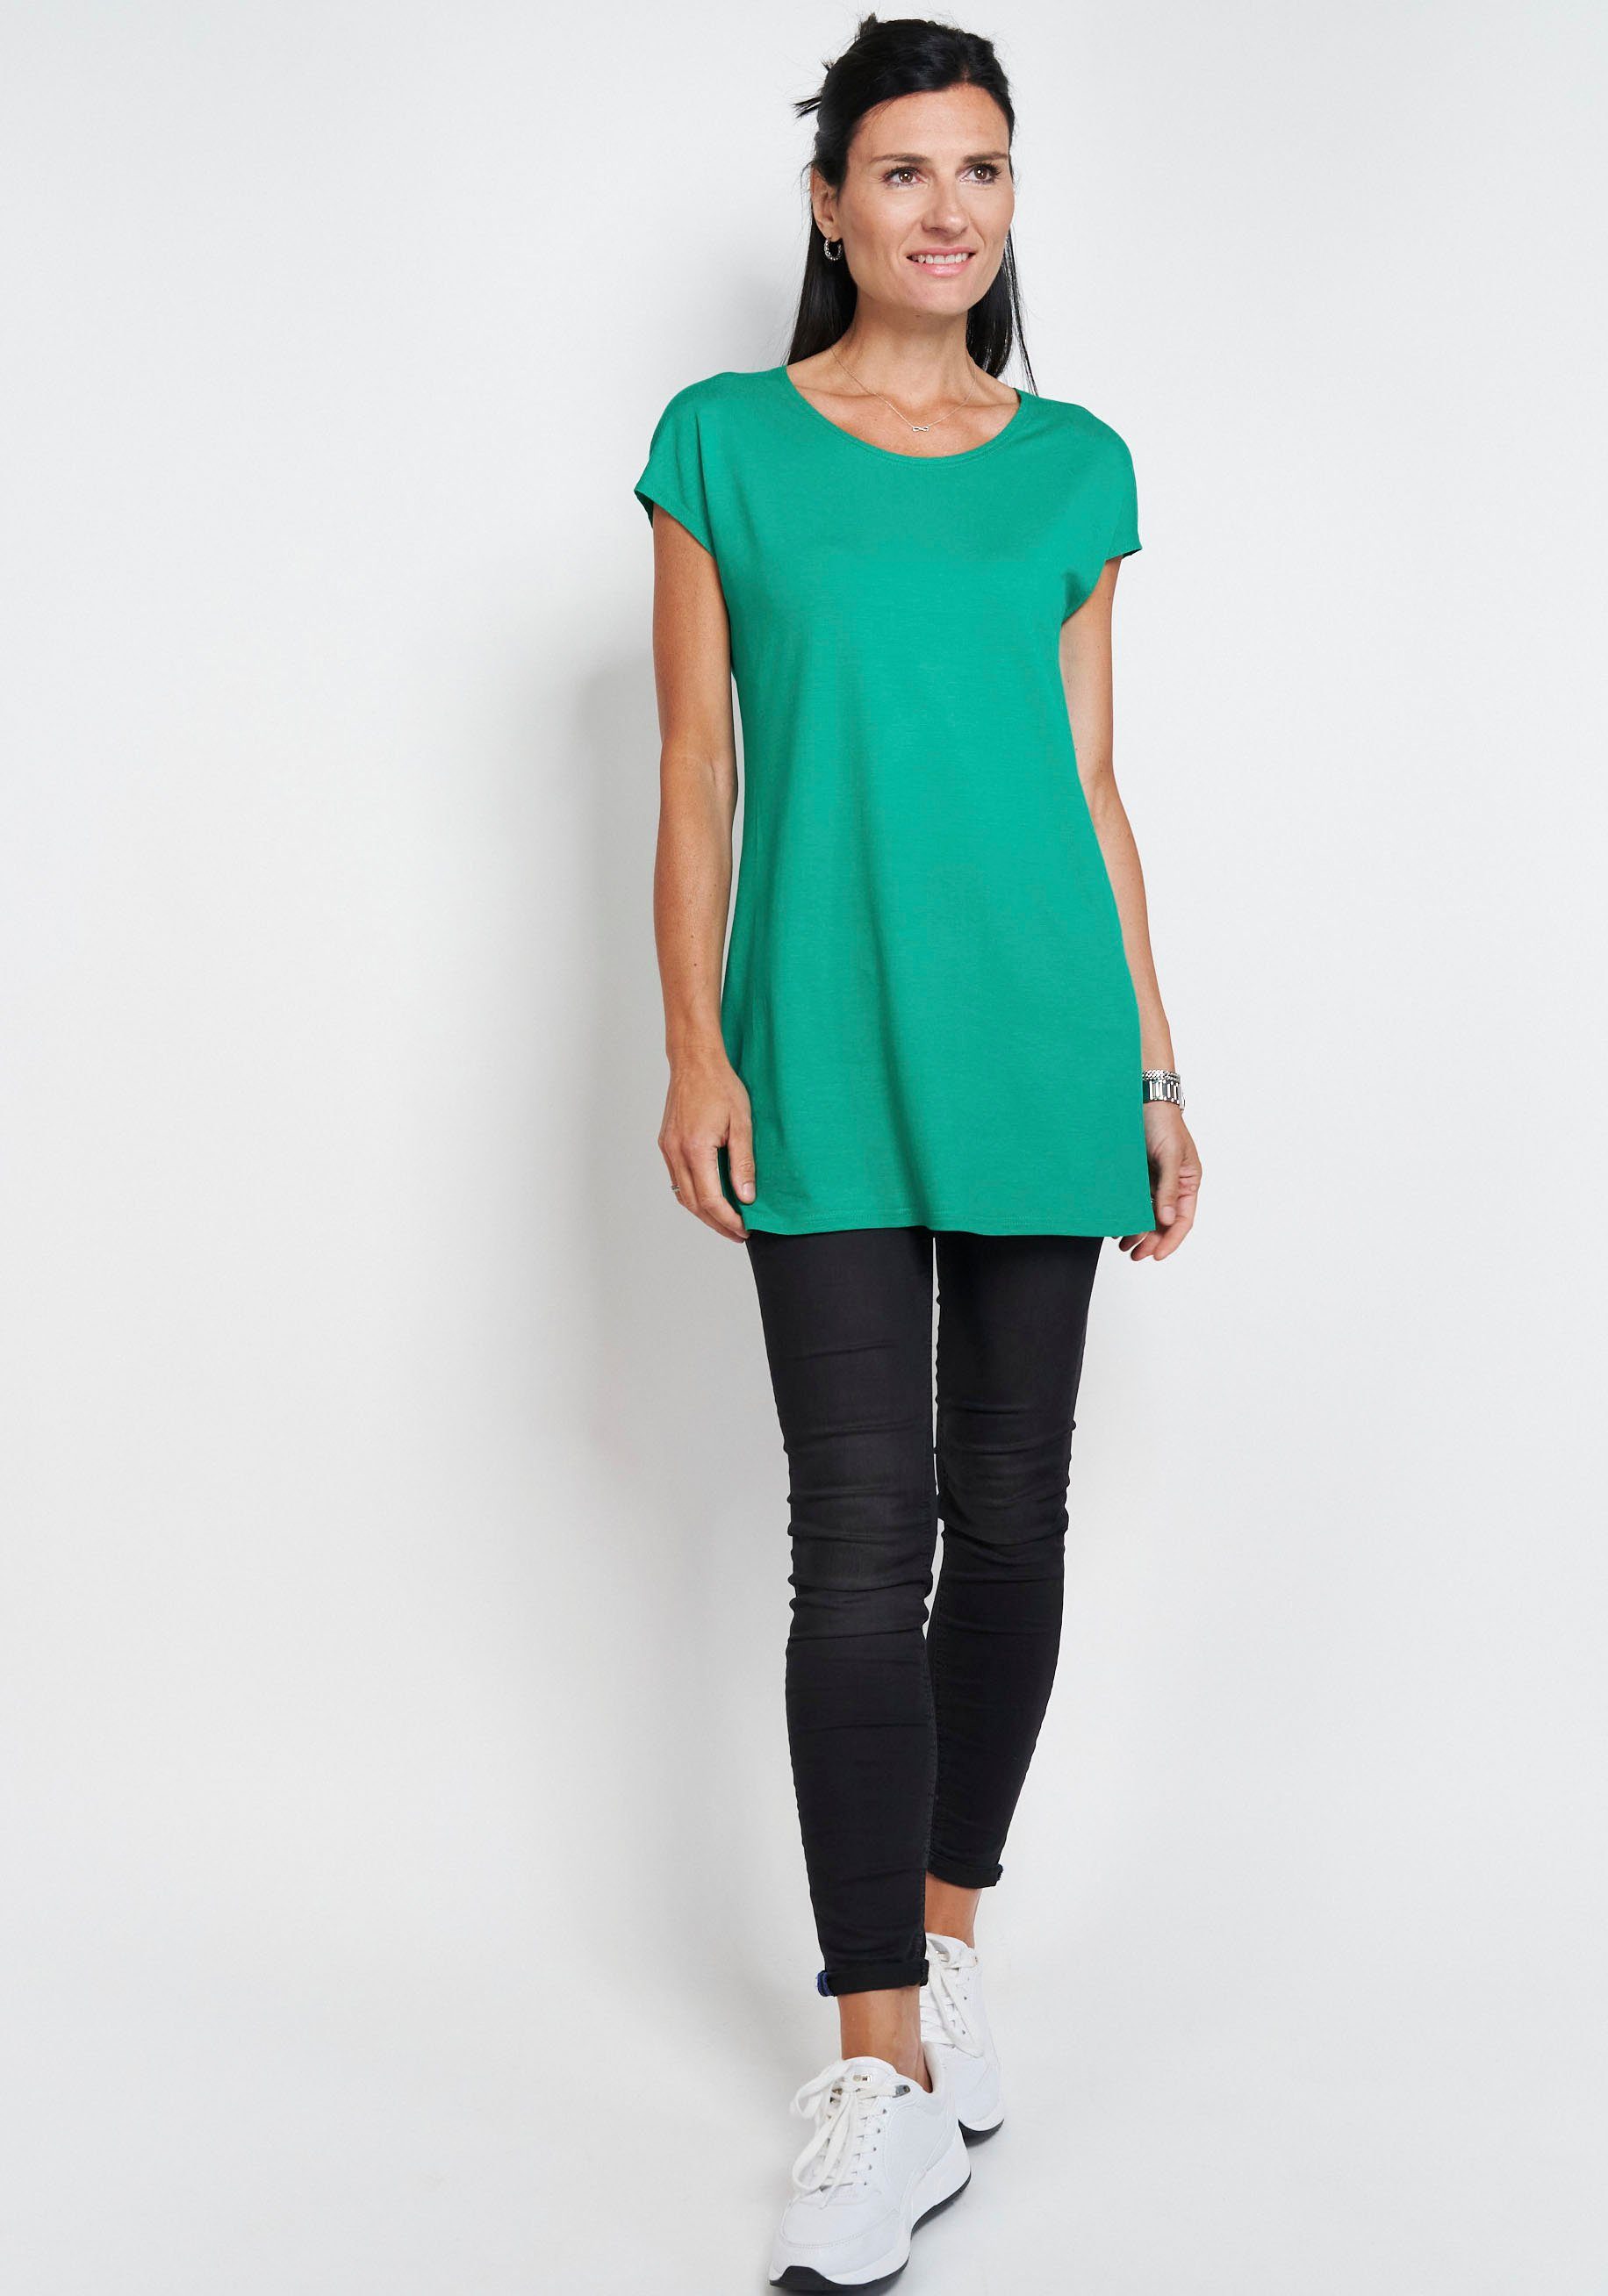 Seidel Moden Longshirt in schlichtem Design grün | T-Shirts